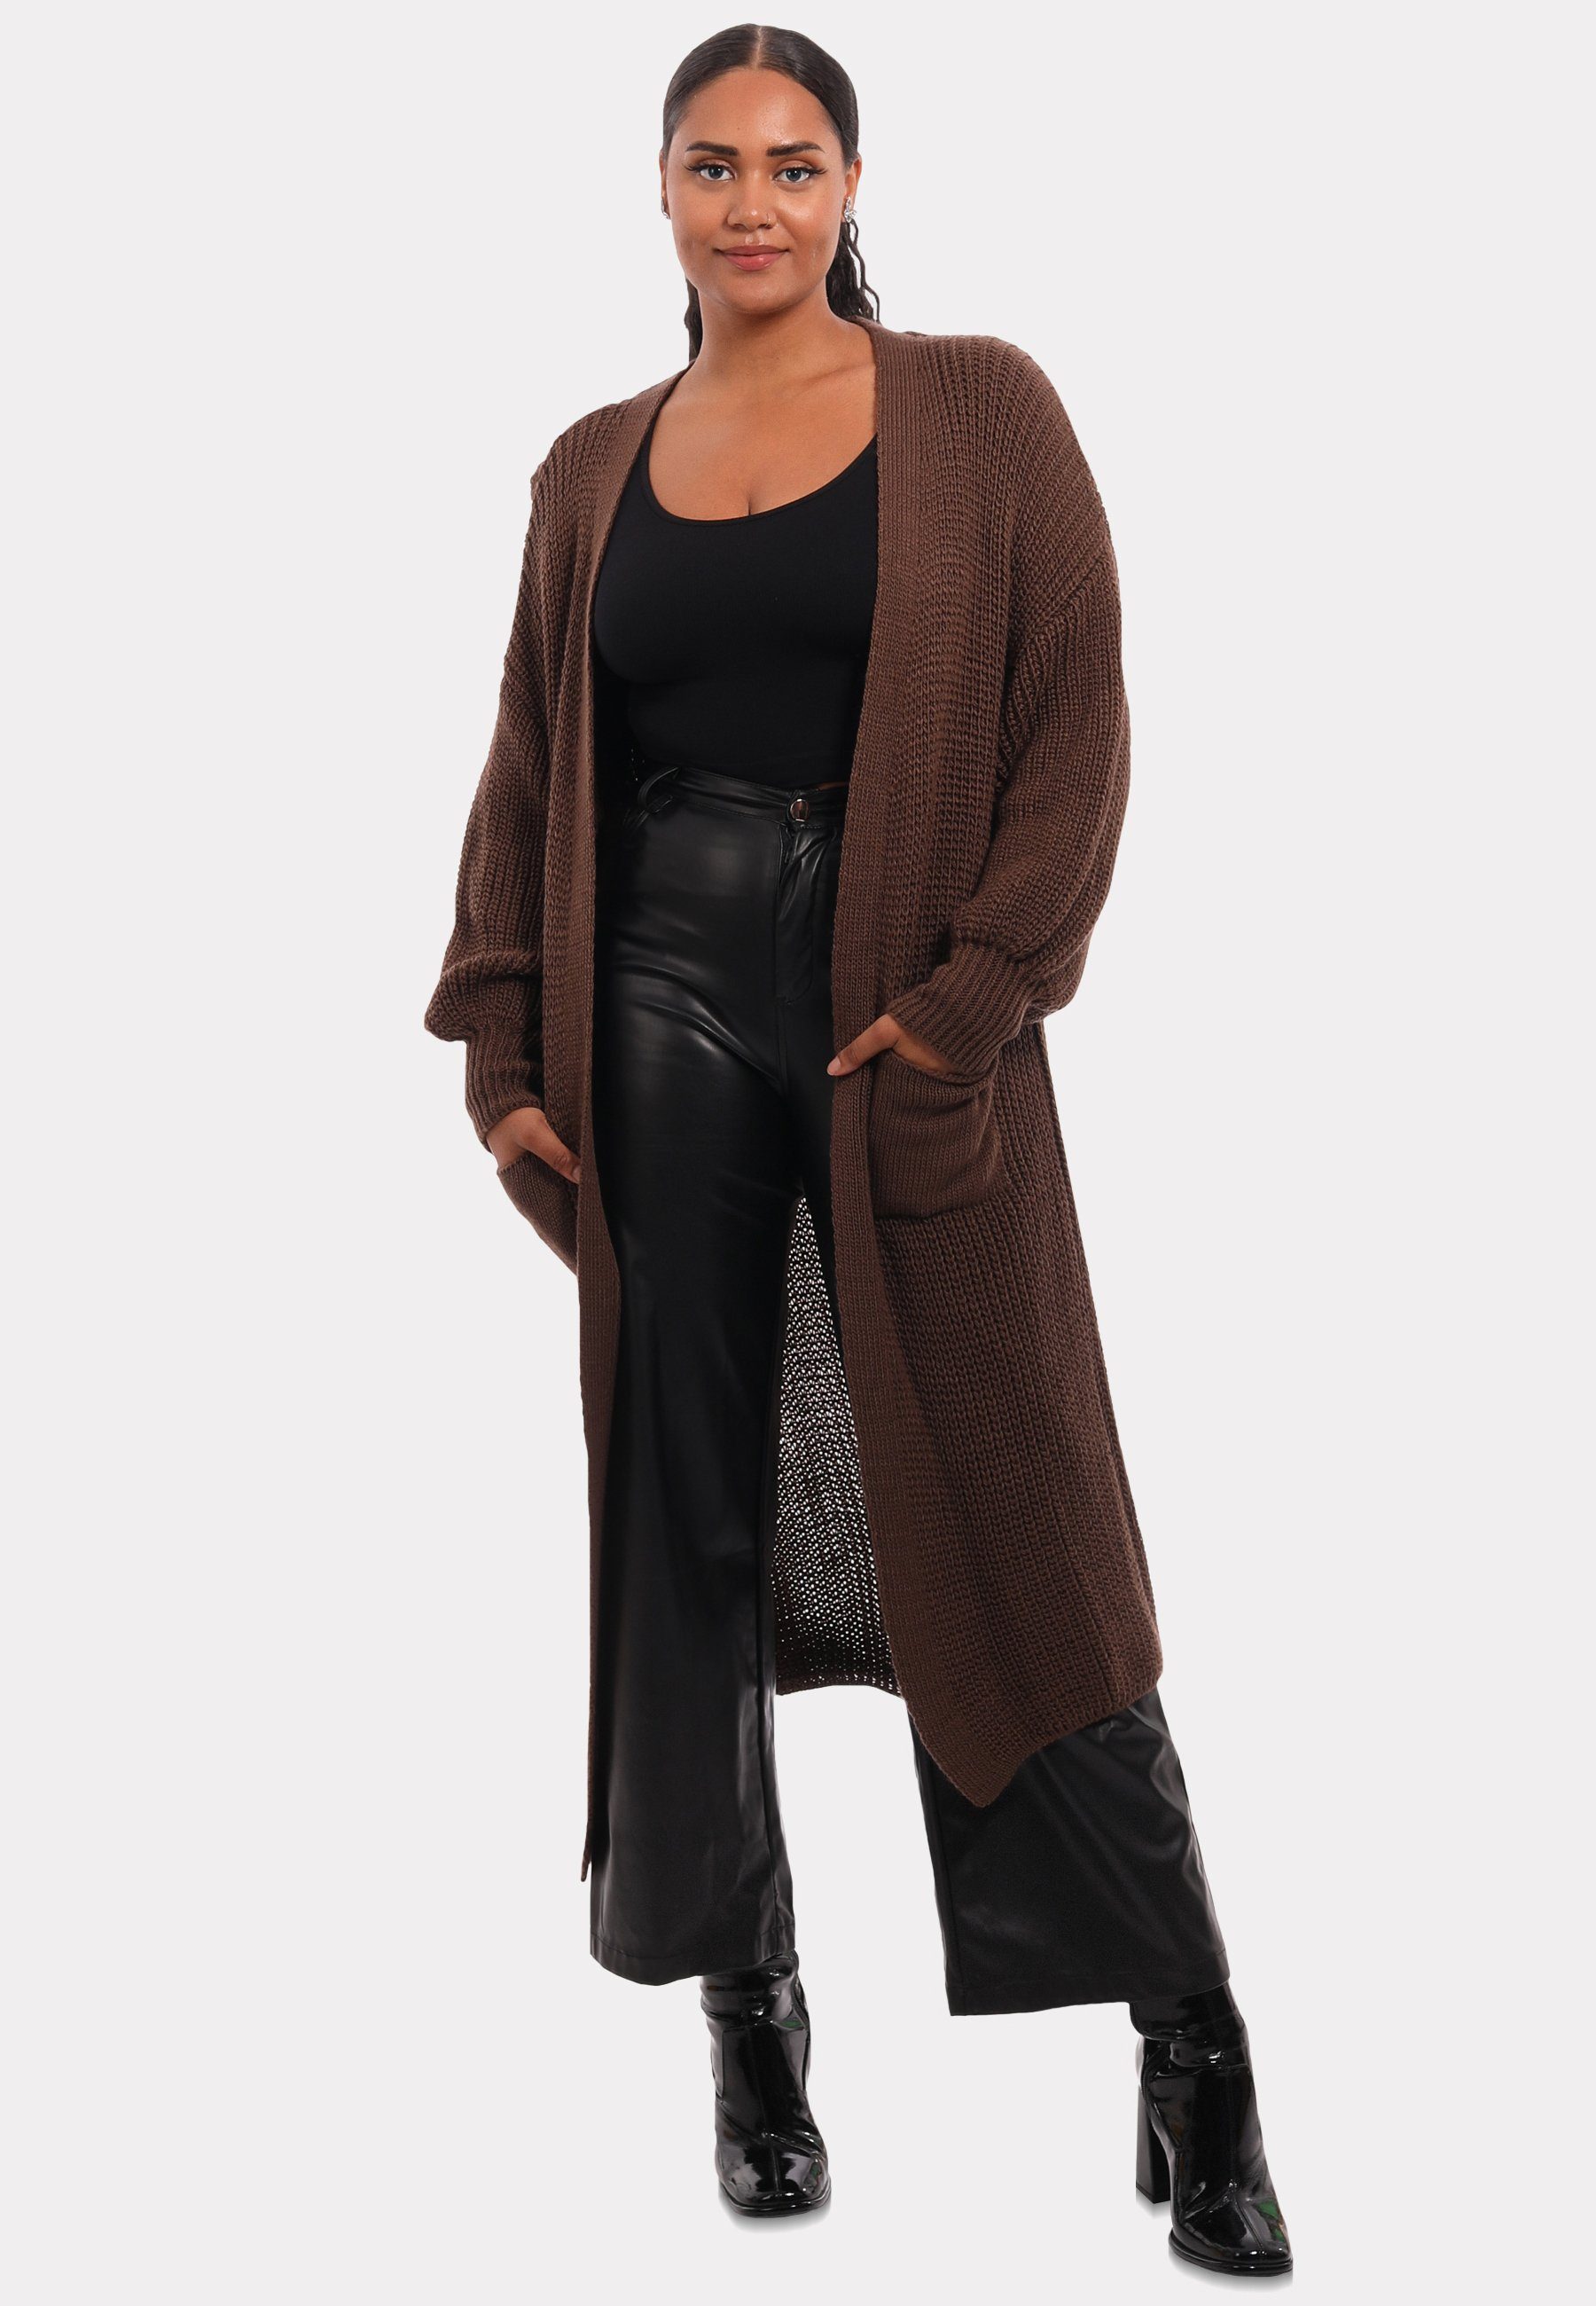 Style in Strickjacke Fashion mit Cardigan braun Verschlusslos YC Unifarbe, & Taschen aufgesetzten Cardigan Basic